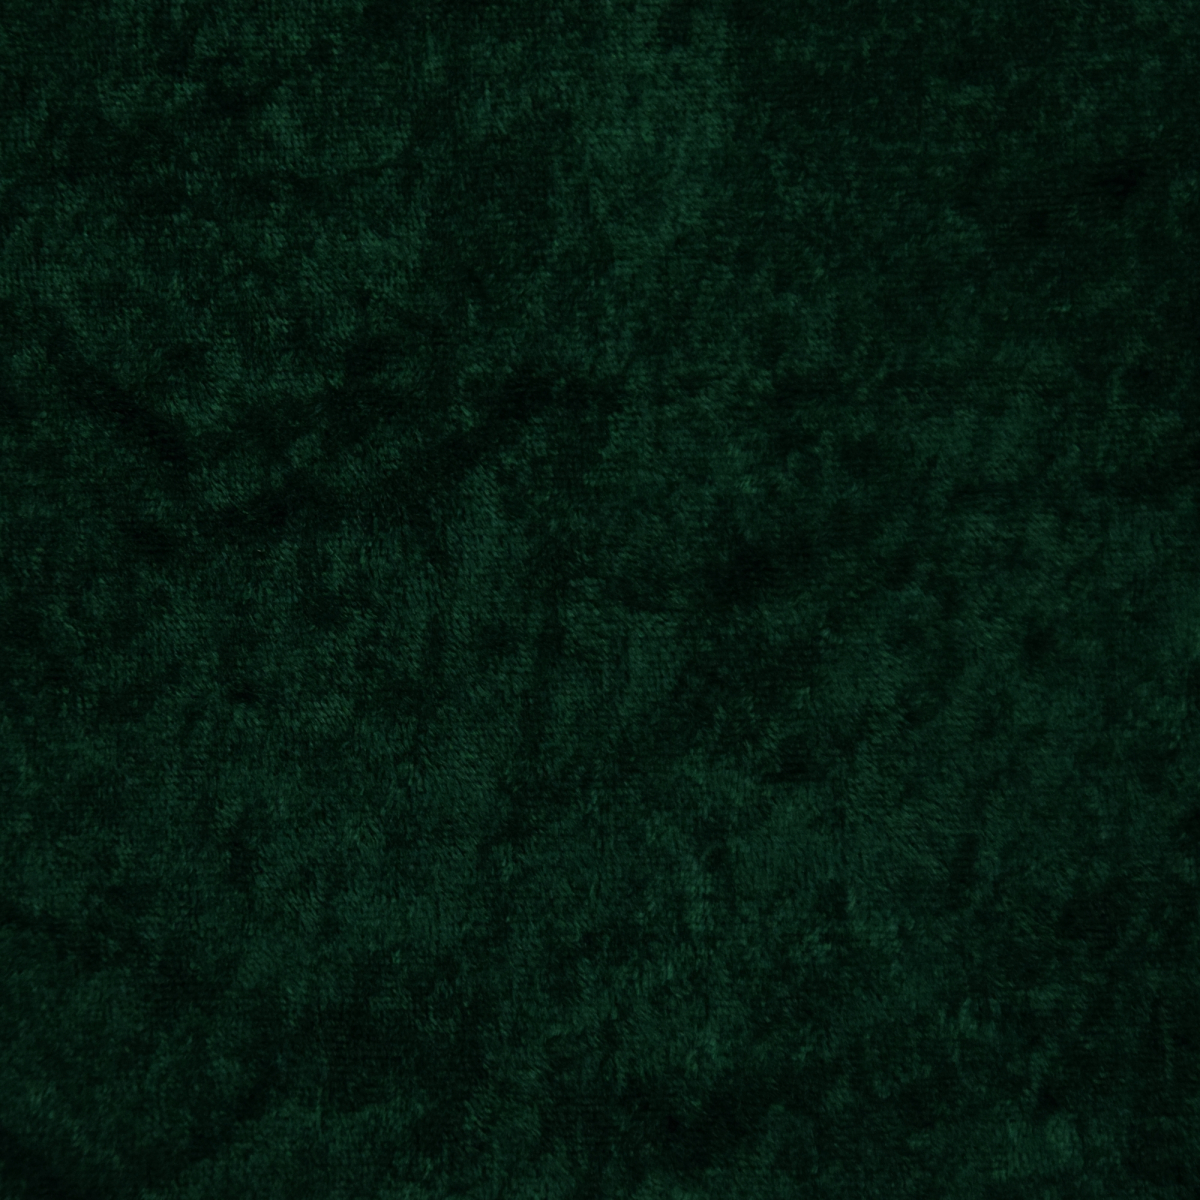 Hunter Green Panne Velvet Fabric